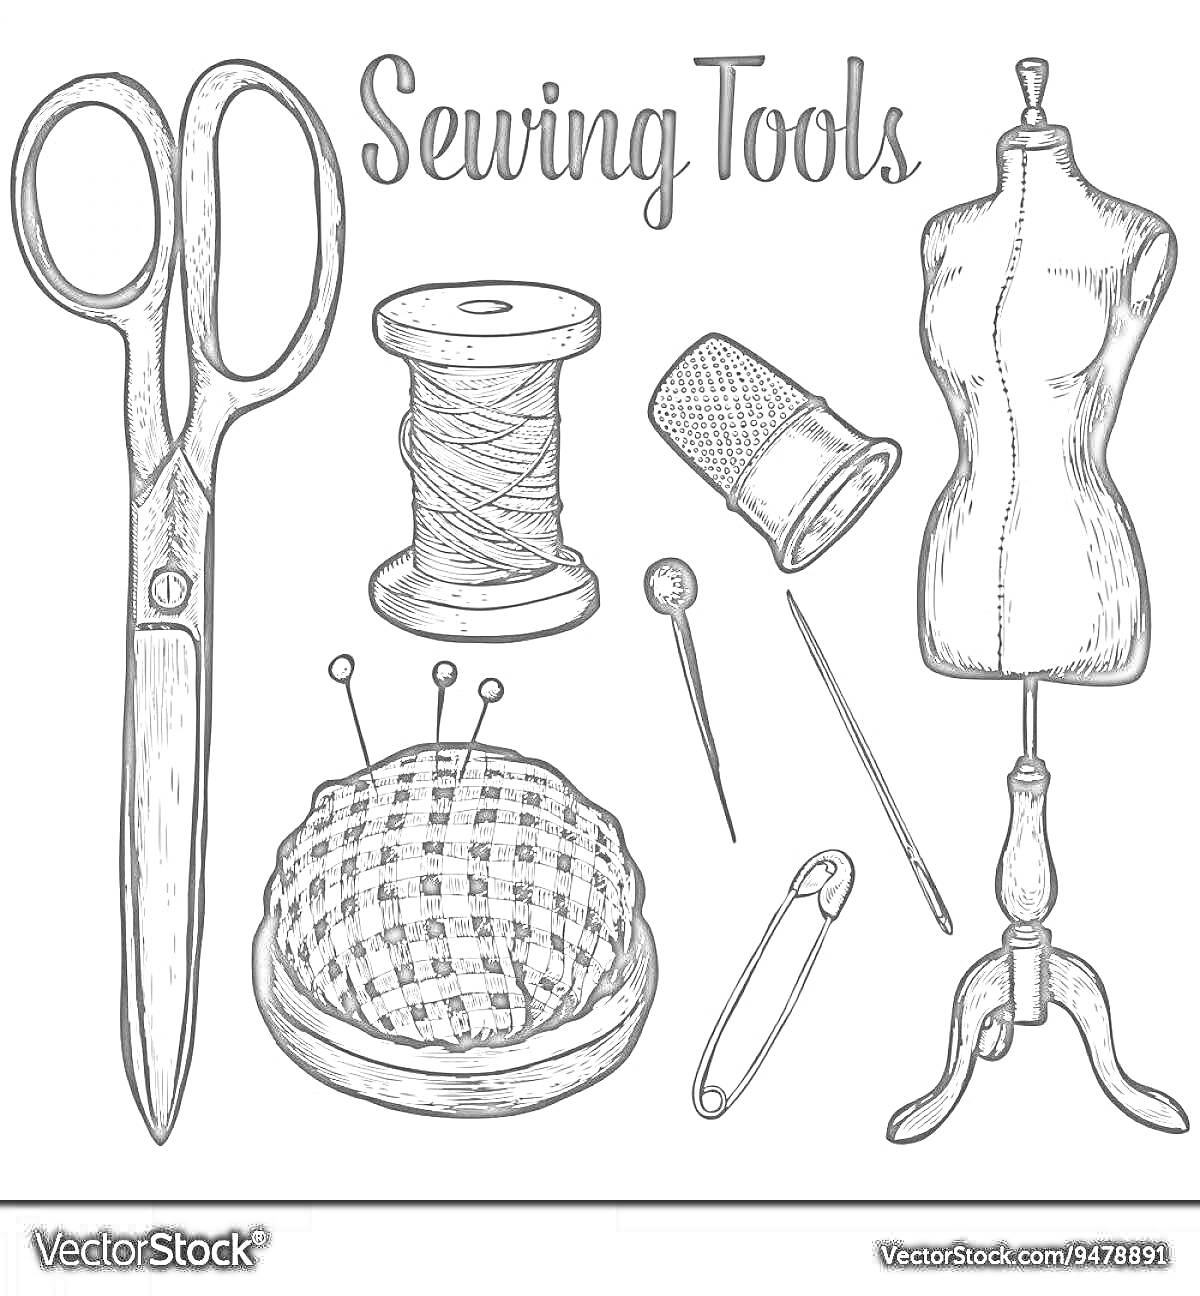 Раскраска Набор инструментов швеи - ножницы, нитка, наперсток, манекен, игольница с булавками, булавка, игла.